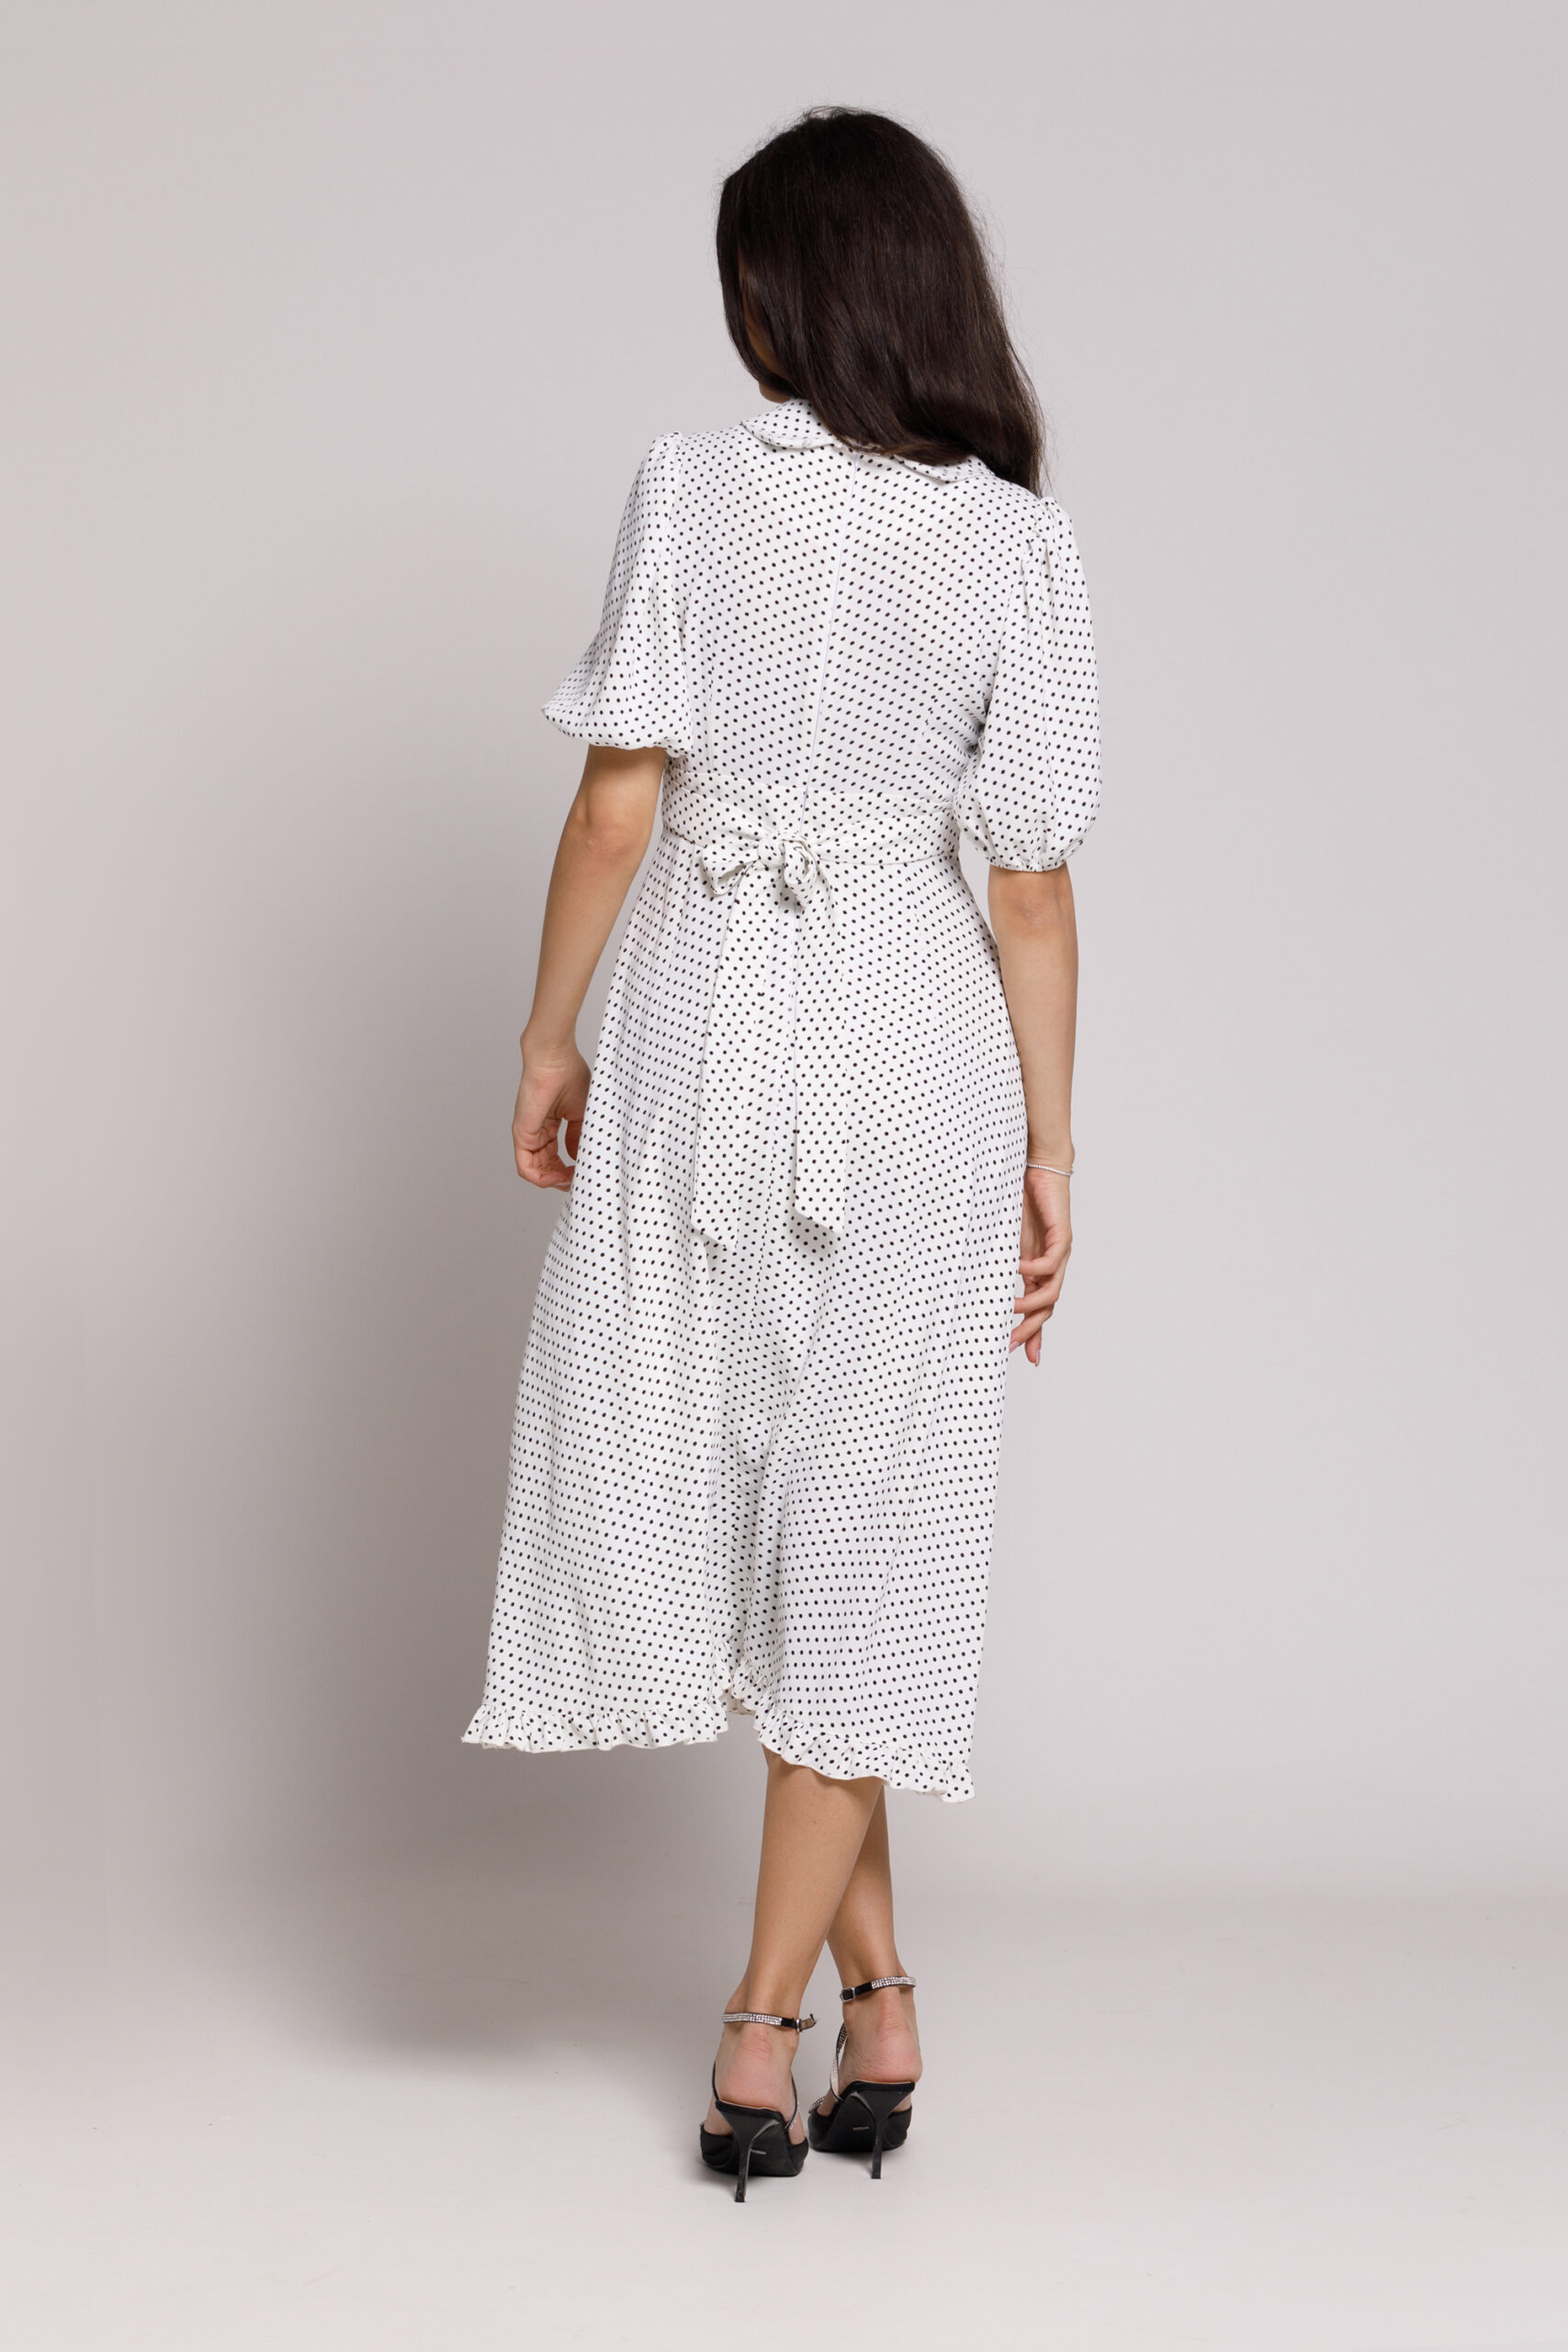 NOLA casual white viscose dress with black dots. Natural fabrics, original design, handmade embroidery